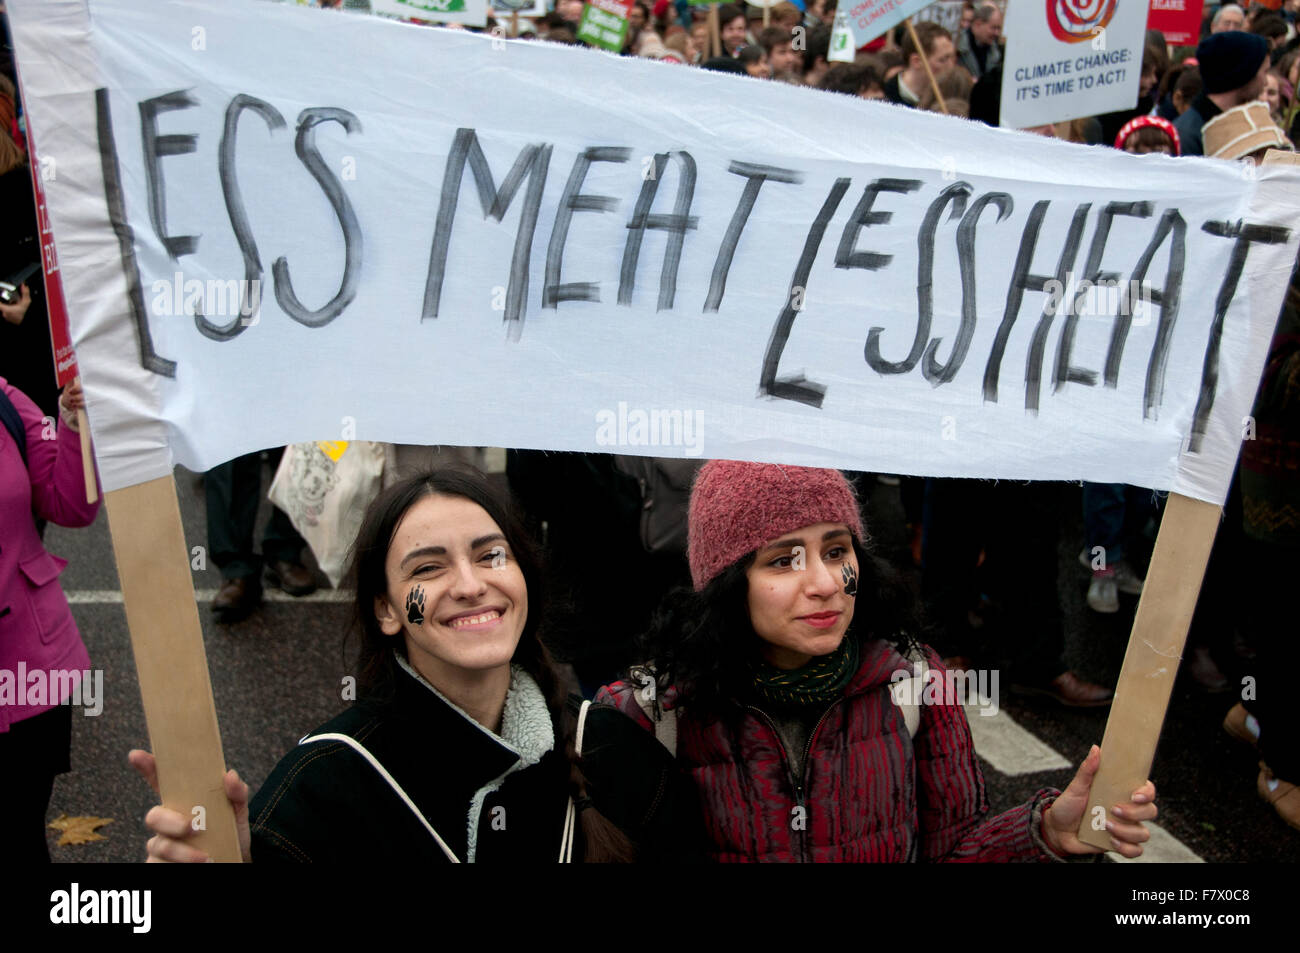 März auf Nachfrage Maßnahmen weltweite führenden zur Bekämpfung des Klimawandels. zwei Demonstranten tragen einen Banner sagen "Weniger Fleisch, weniger Wärme" Stockfoto